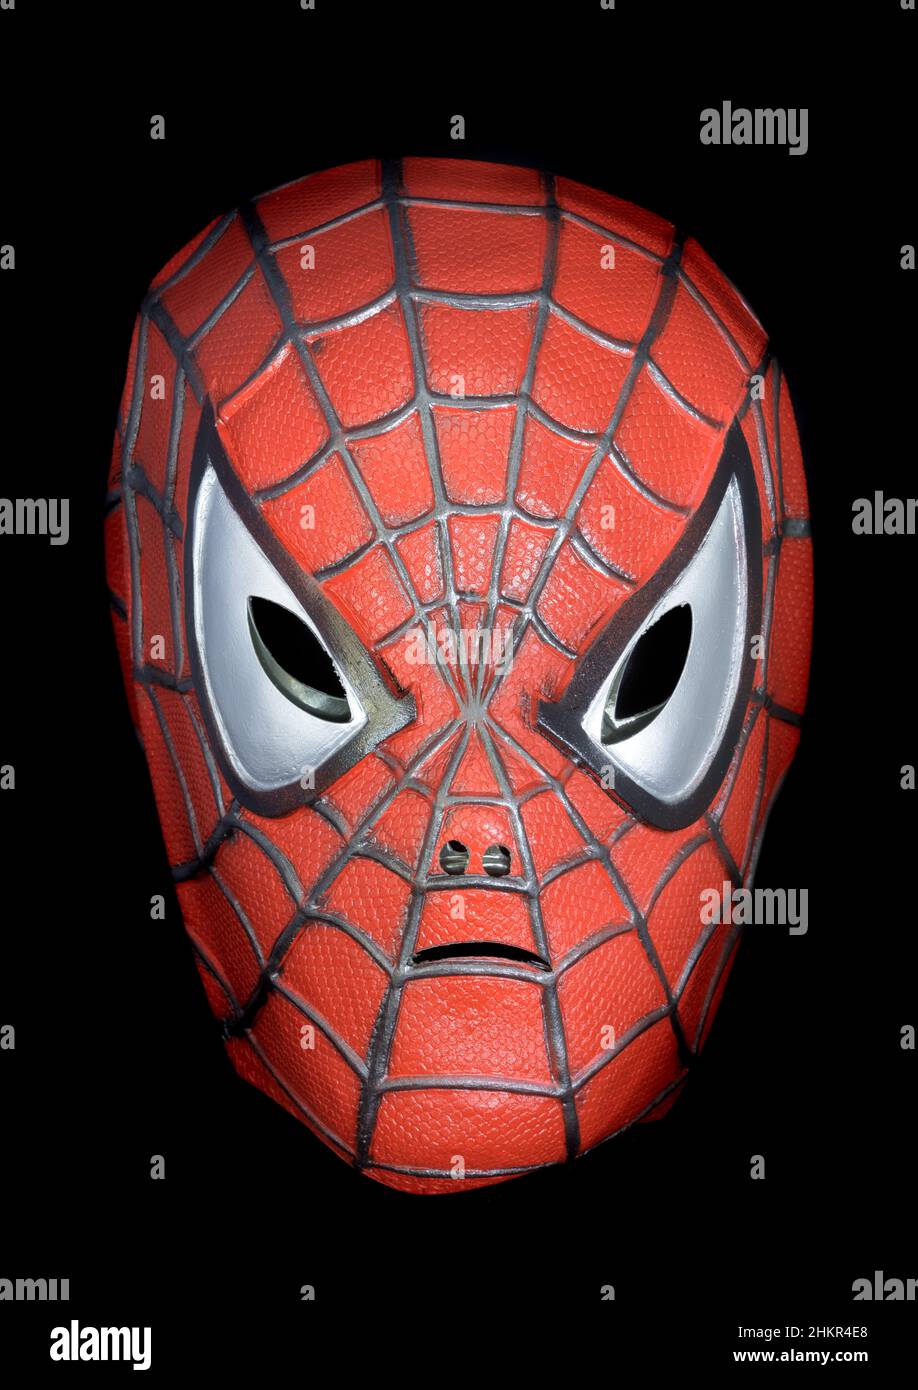 https://c8.alamy.com/compes/2hkr4e8/mascara-spiderman-aislada-contra-fondo-negro-2hkr4e8.jpg